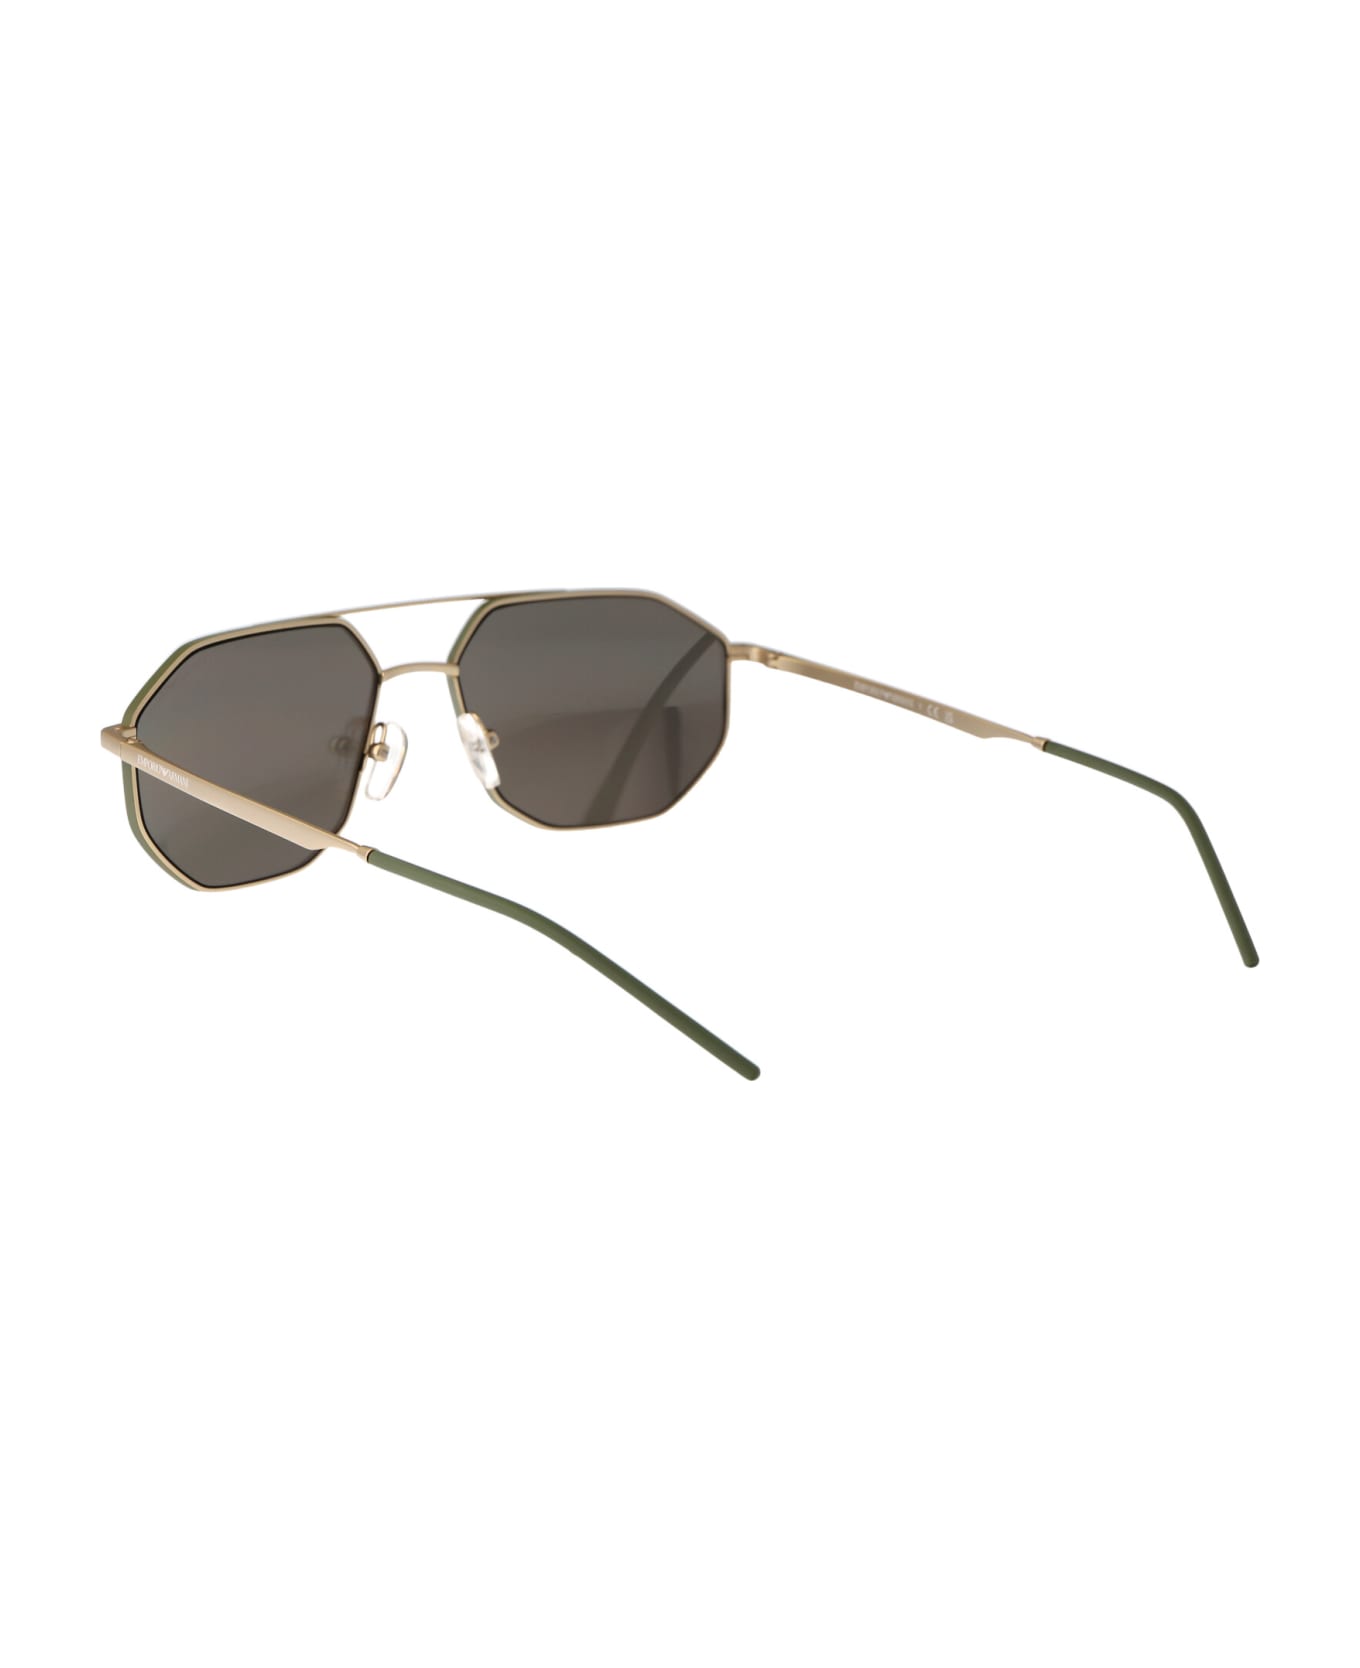 Emporio Armani 0ea2147 Sunglasses - 30025A Matte Gold サングラス